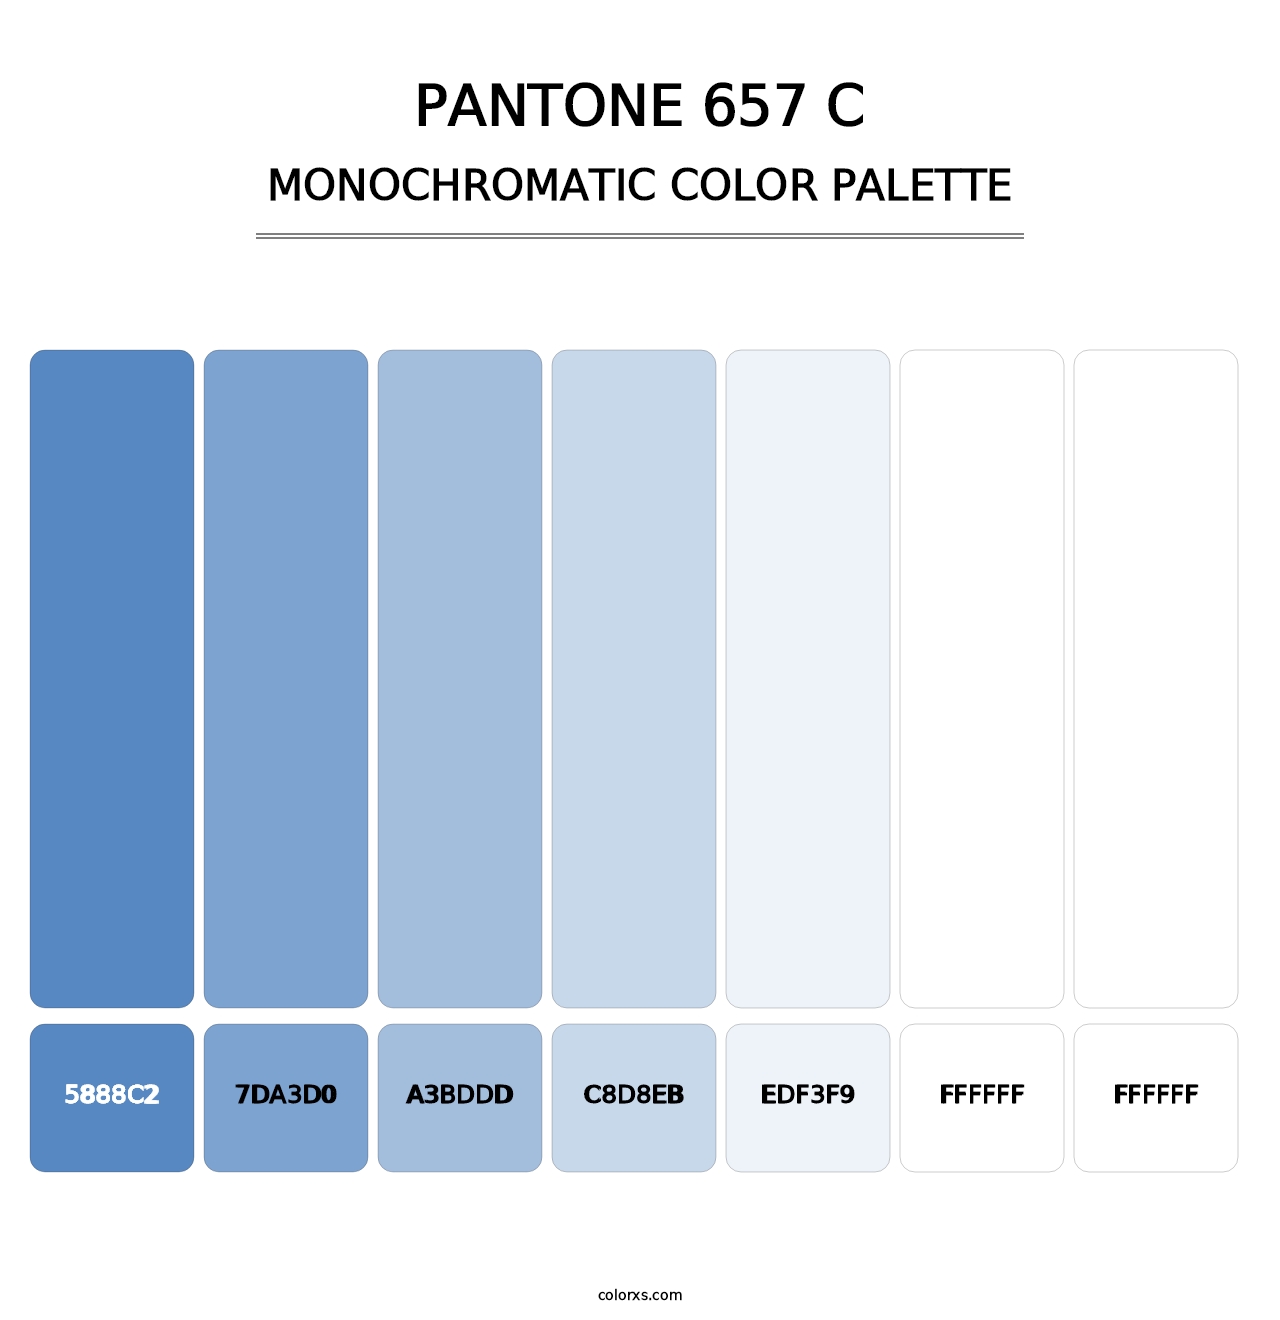 PANTONE 657 C - Monochromatic Color Palette